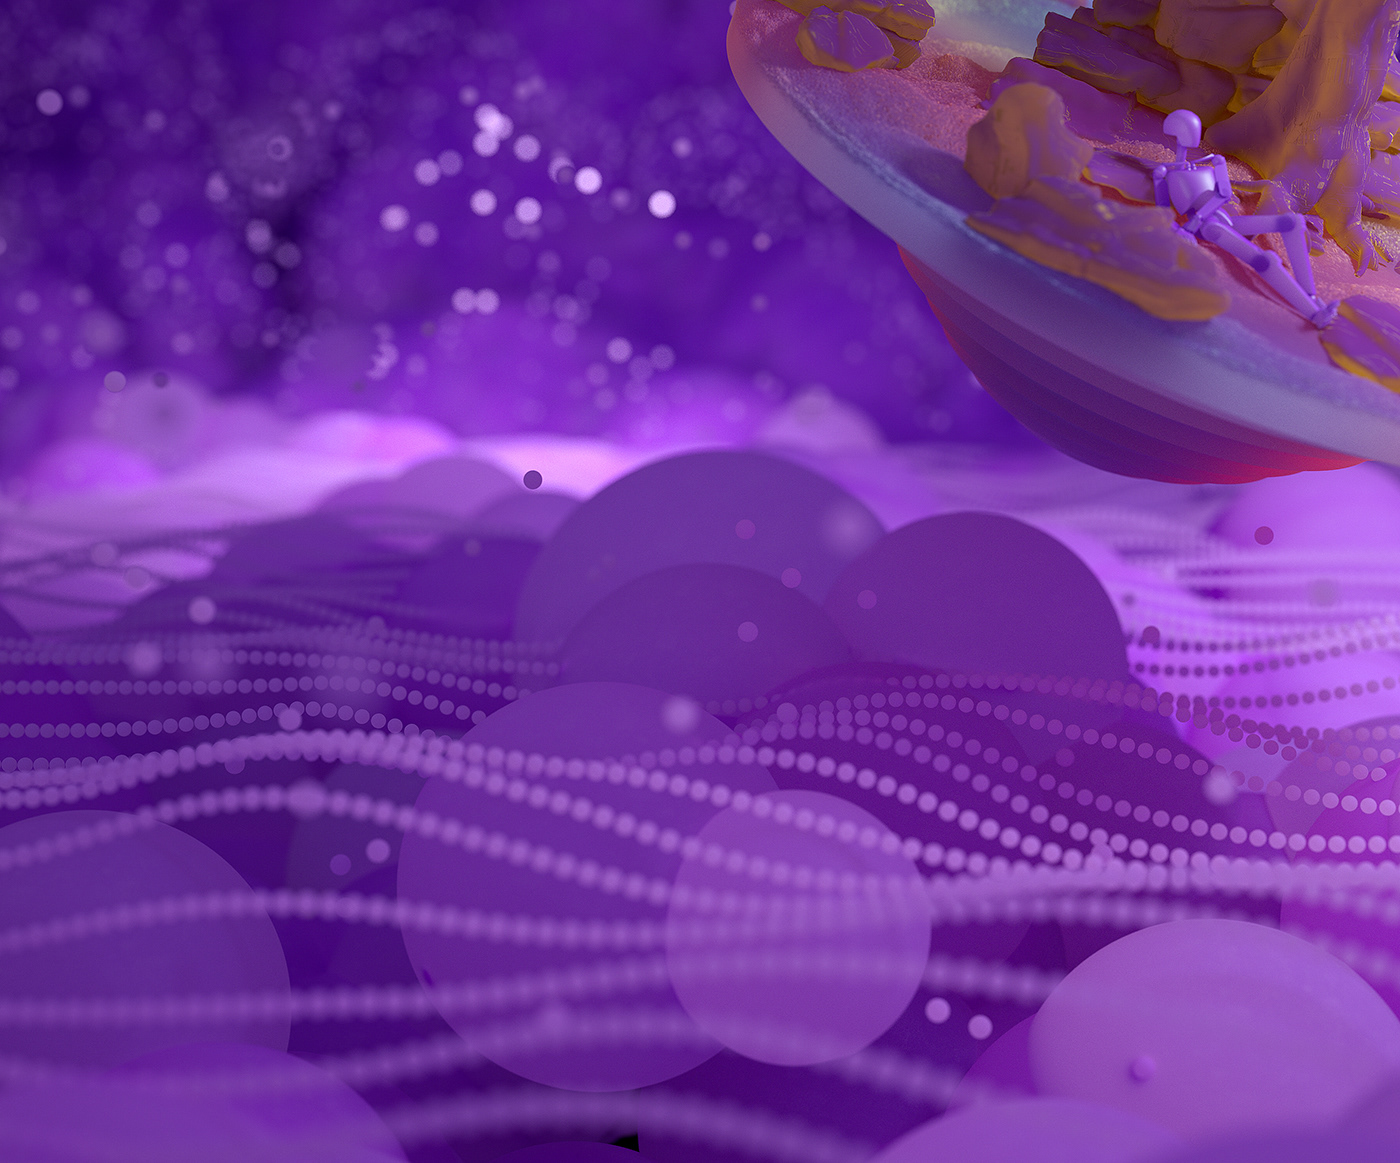 c4d cinema 4d subsurface scattering SSS light 3D design purple surreal